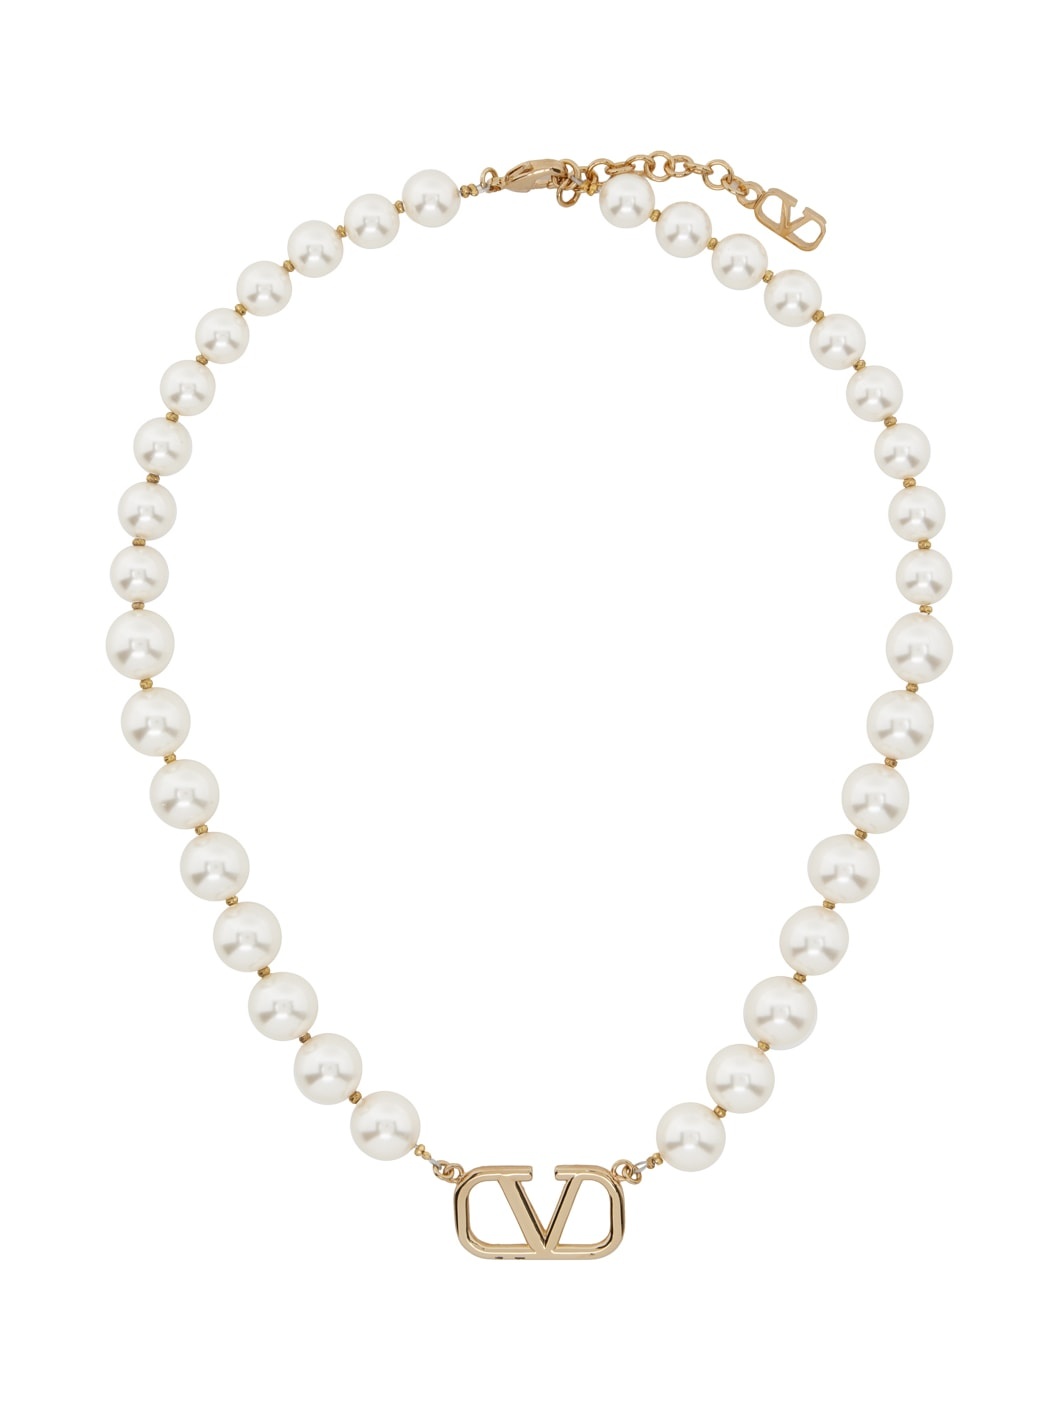 White & Gold VLogo Signature Necklace - 1